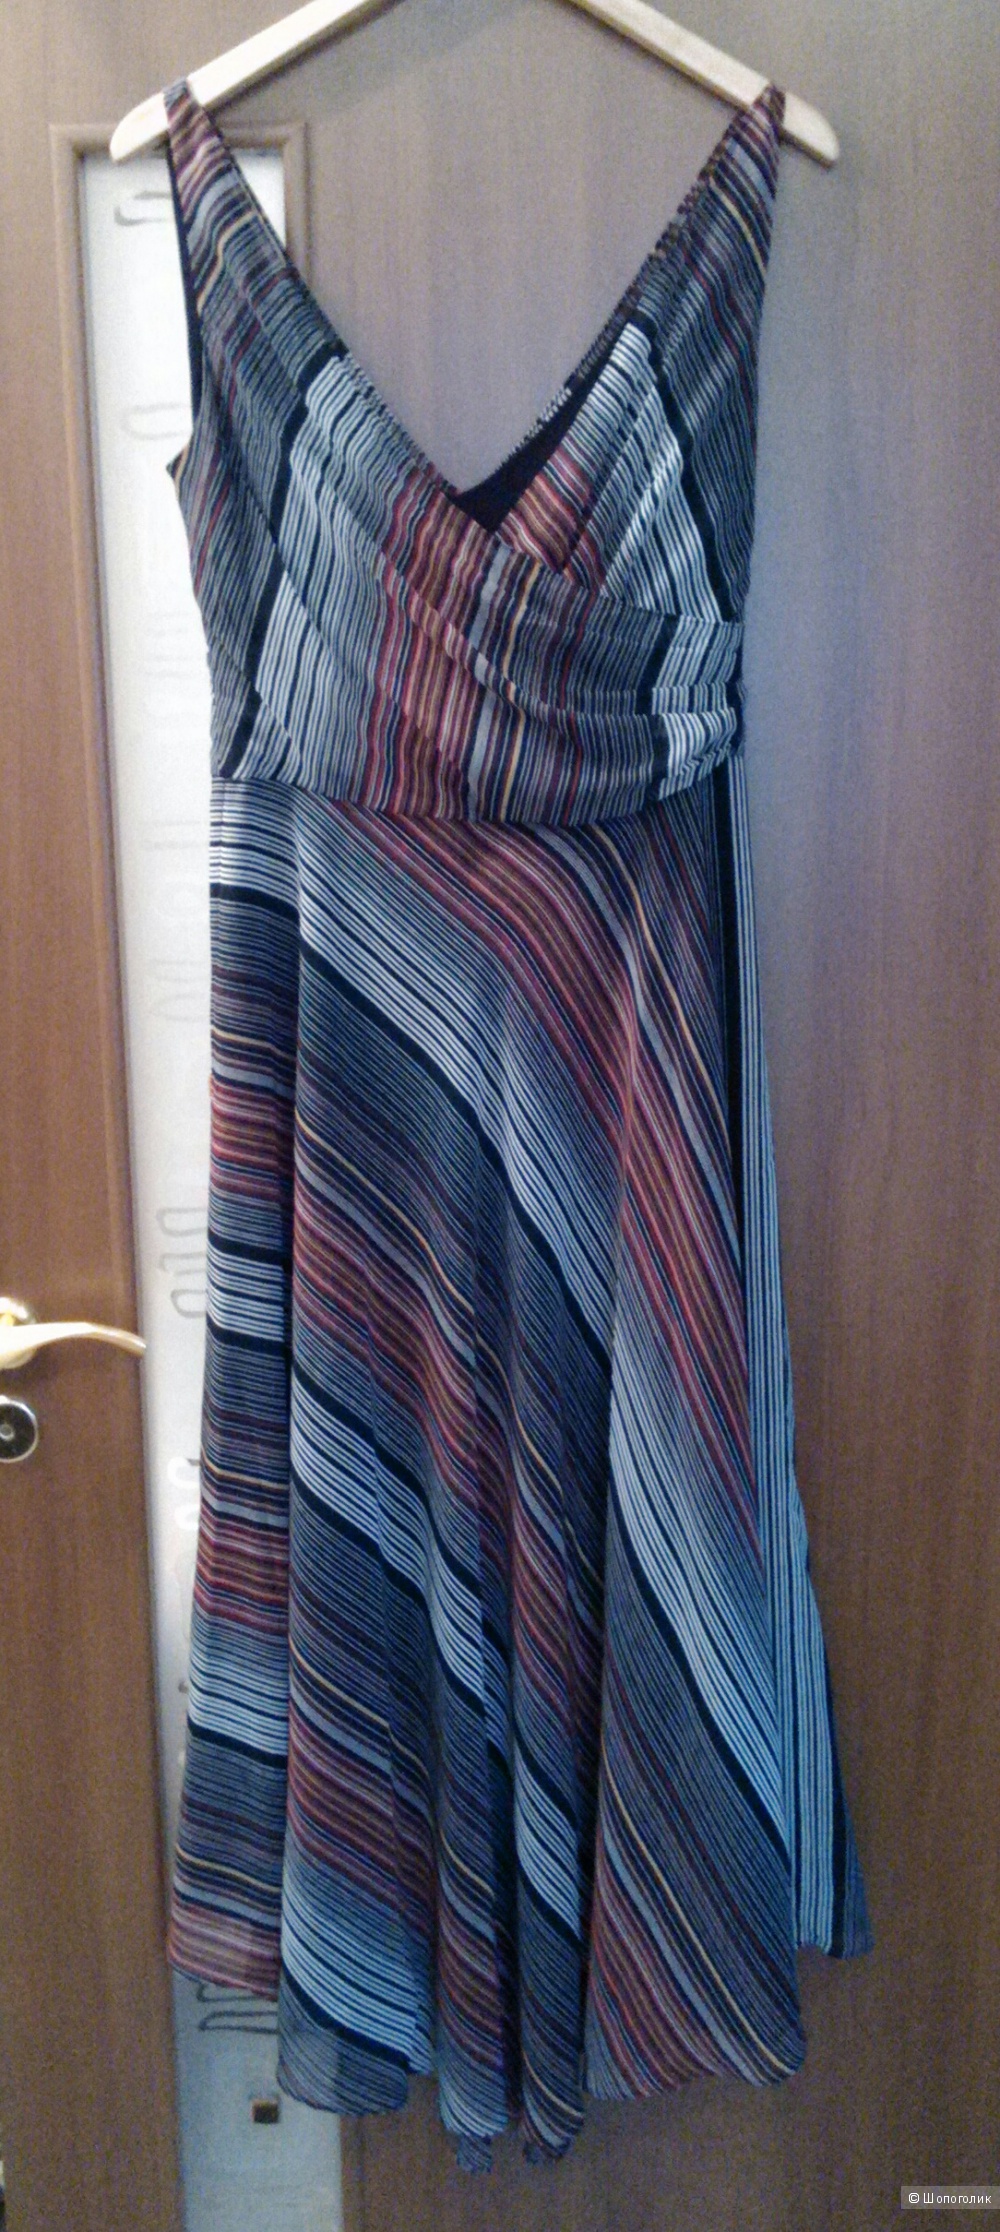 Шифоновое платье итальянского бренда Katia Ricciarelly 46-48 размера